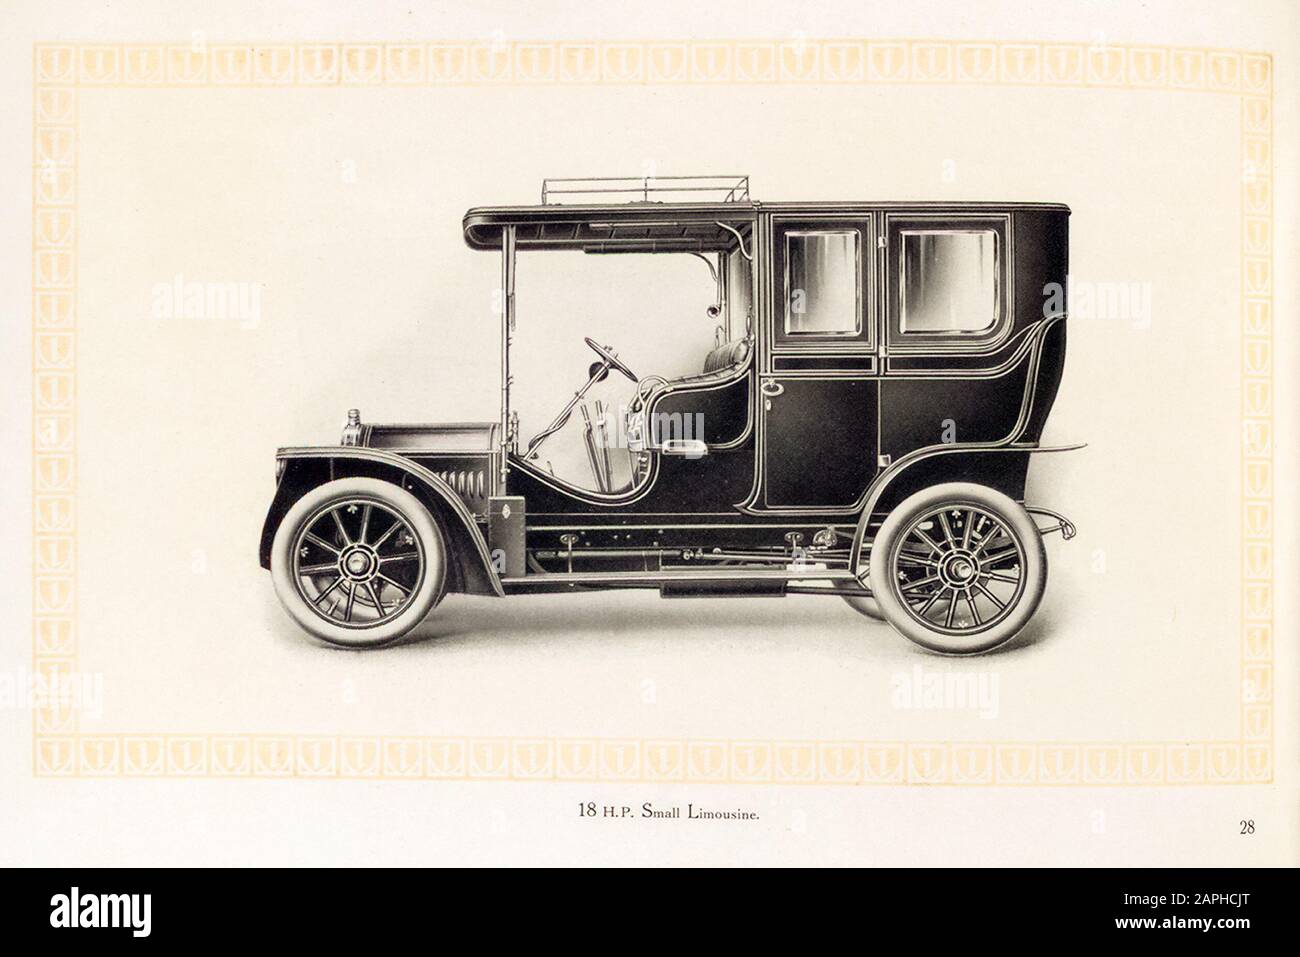 Automobile Benz, voiture de 18 hp Small limousine Vintage à partir du catalogue commercial Benz & Co, illustration 1909 Banque D'Images